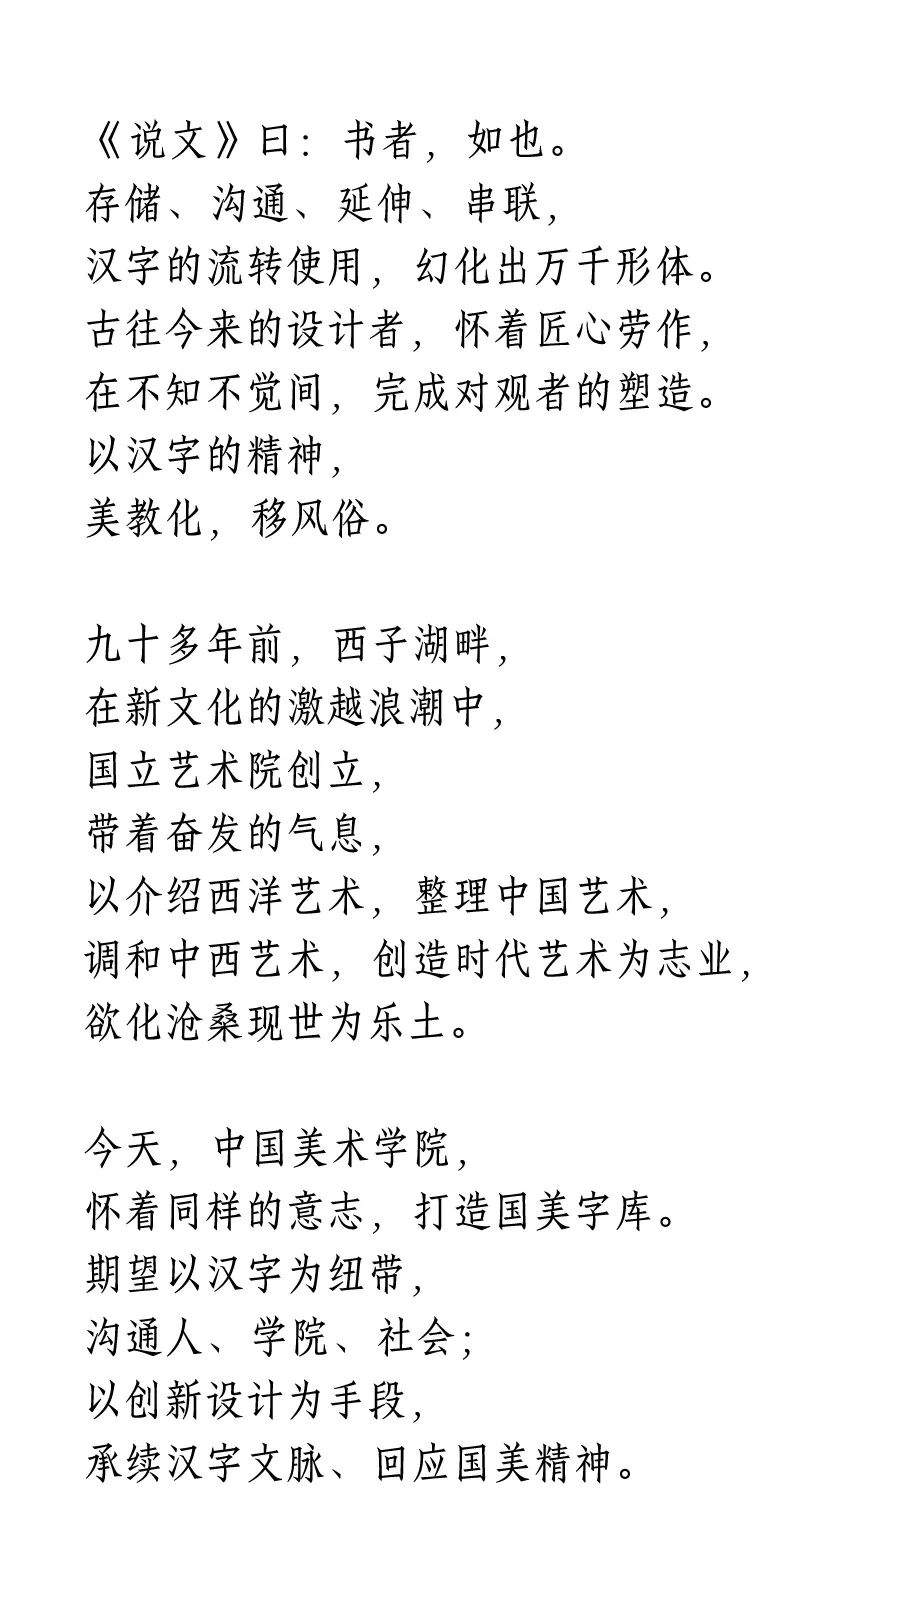 技进乎道——中国美术学院首款标题字体「方正国美进道体」发布(图1)